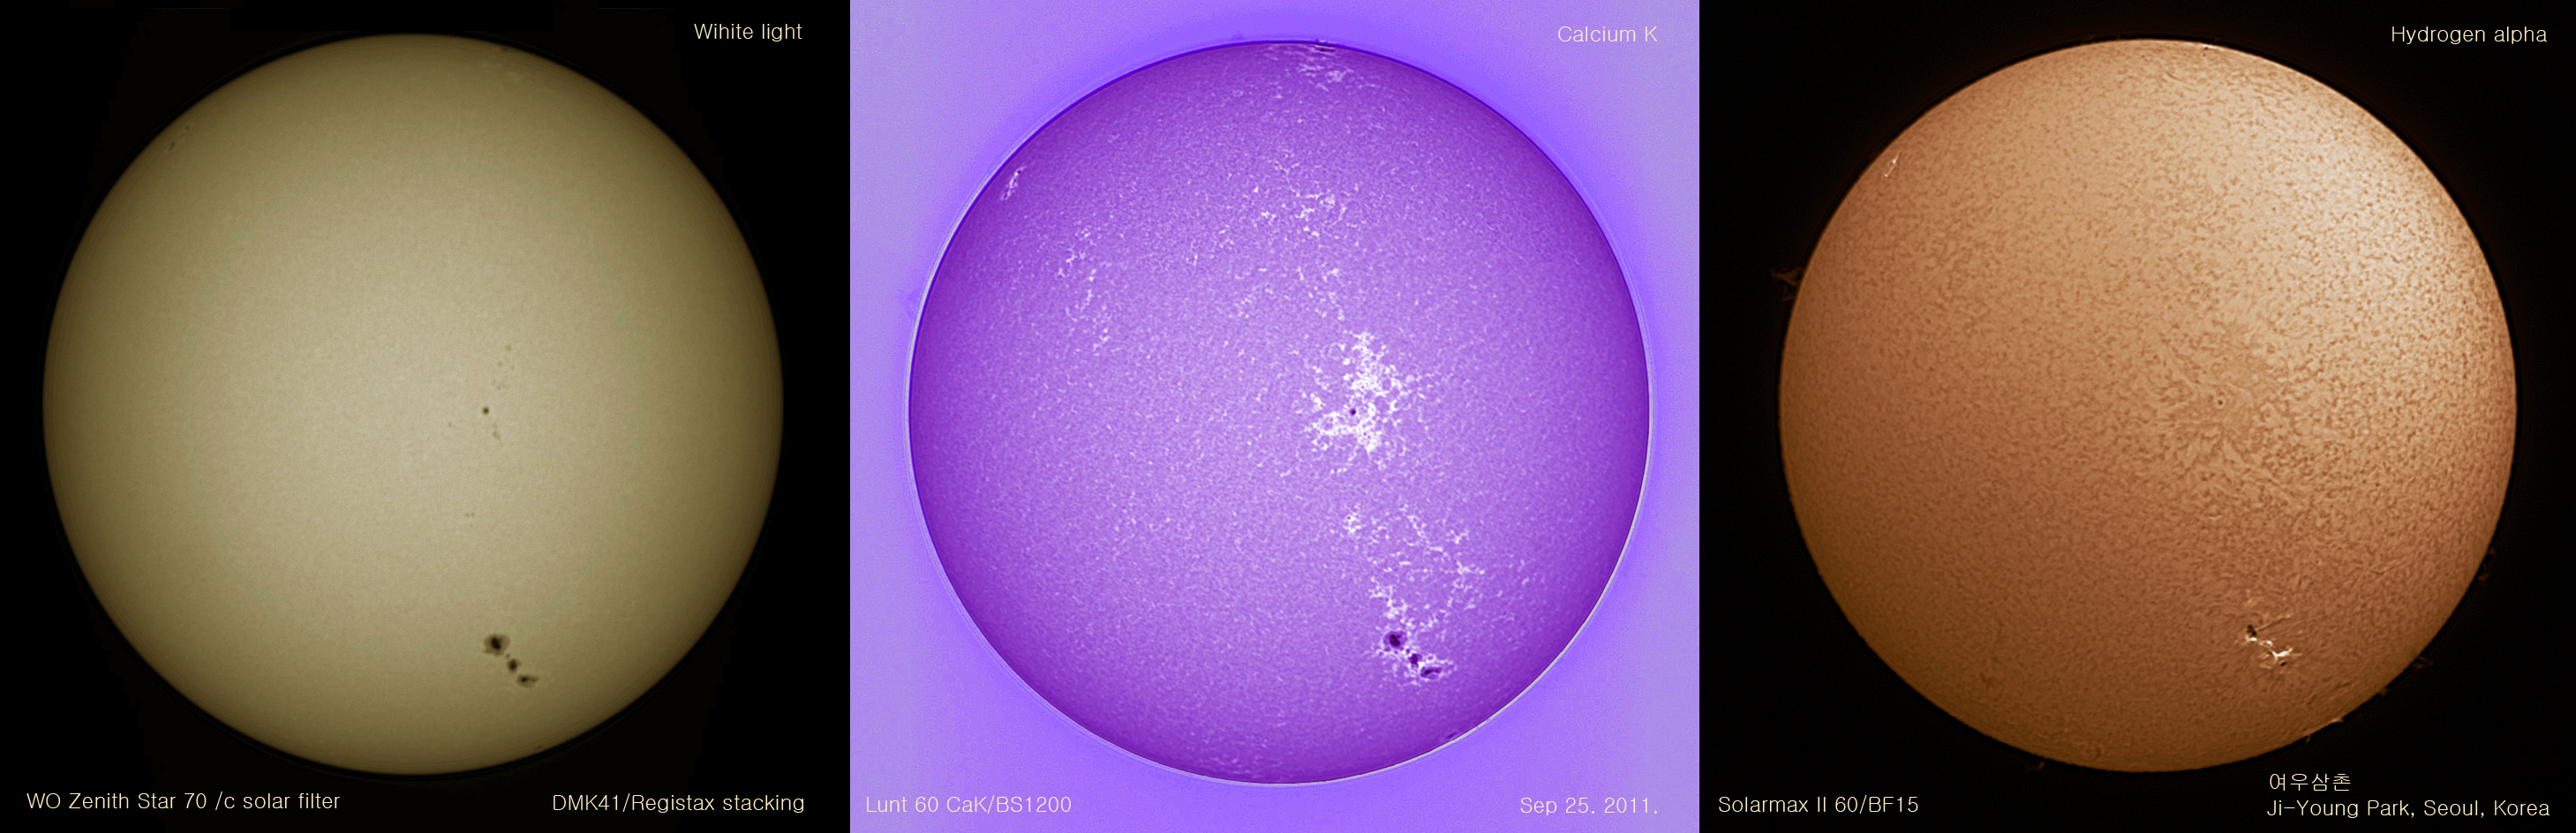 4fdef98956c1f343e9967e662c5e4c03.jpg : Different  view of Sun with sunspot 1302